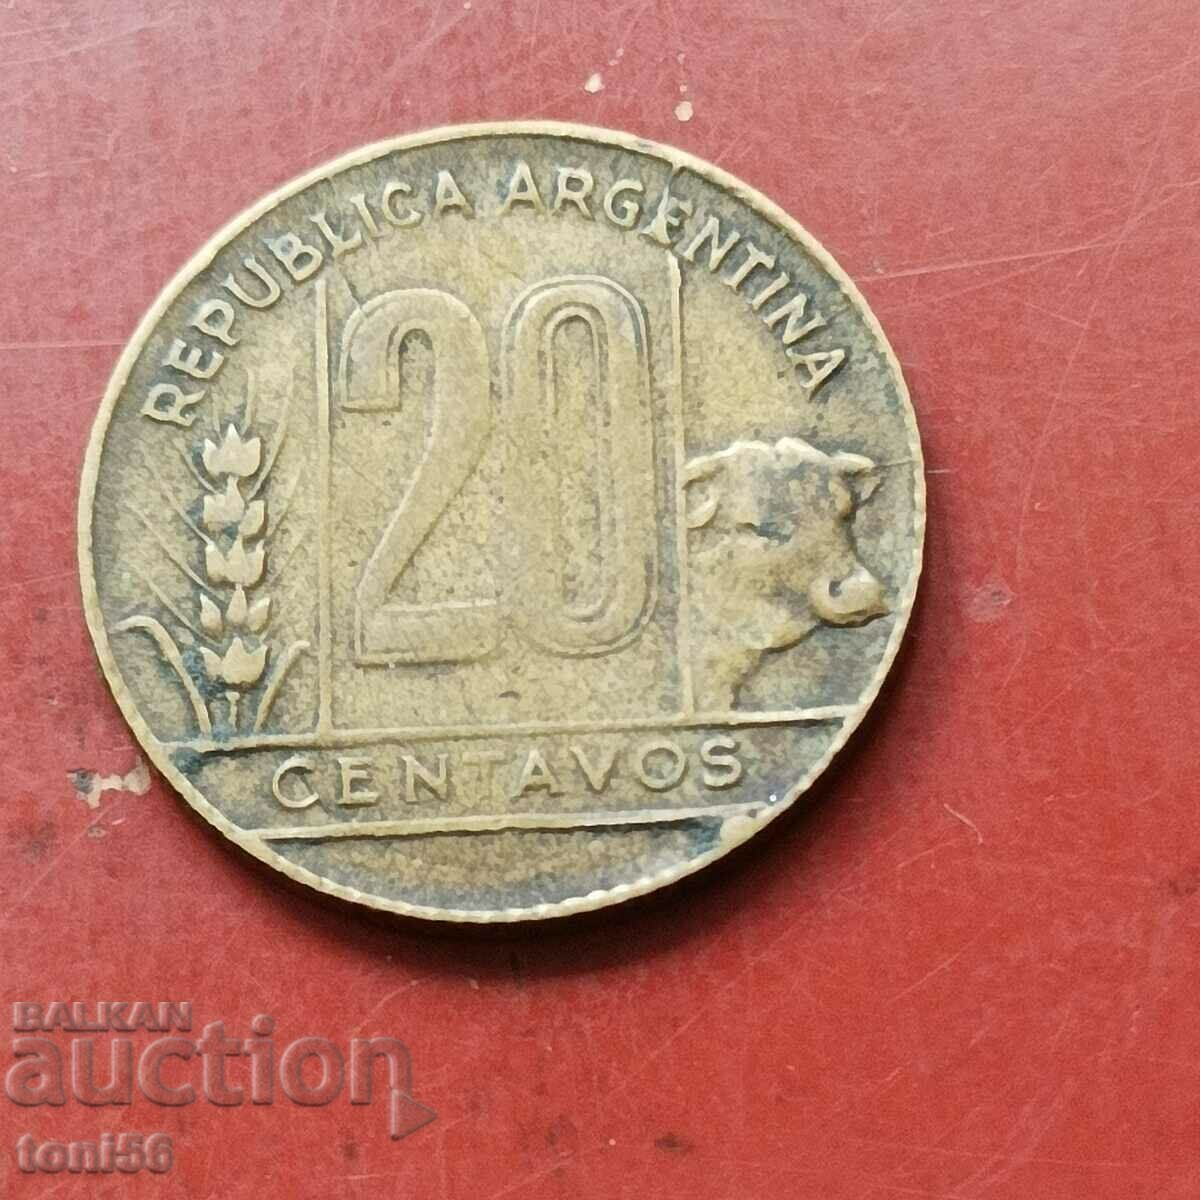 Argentina 20 centavos 1950